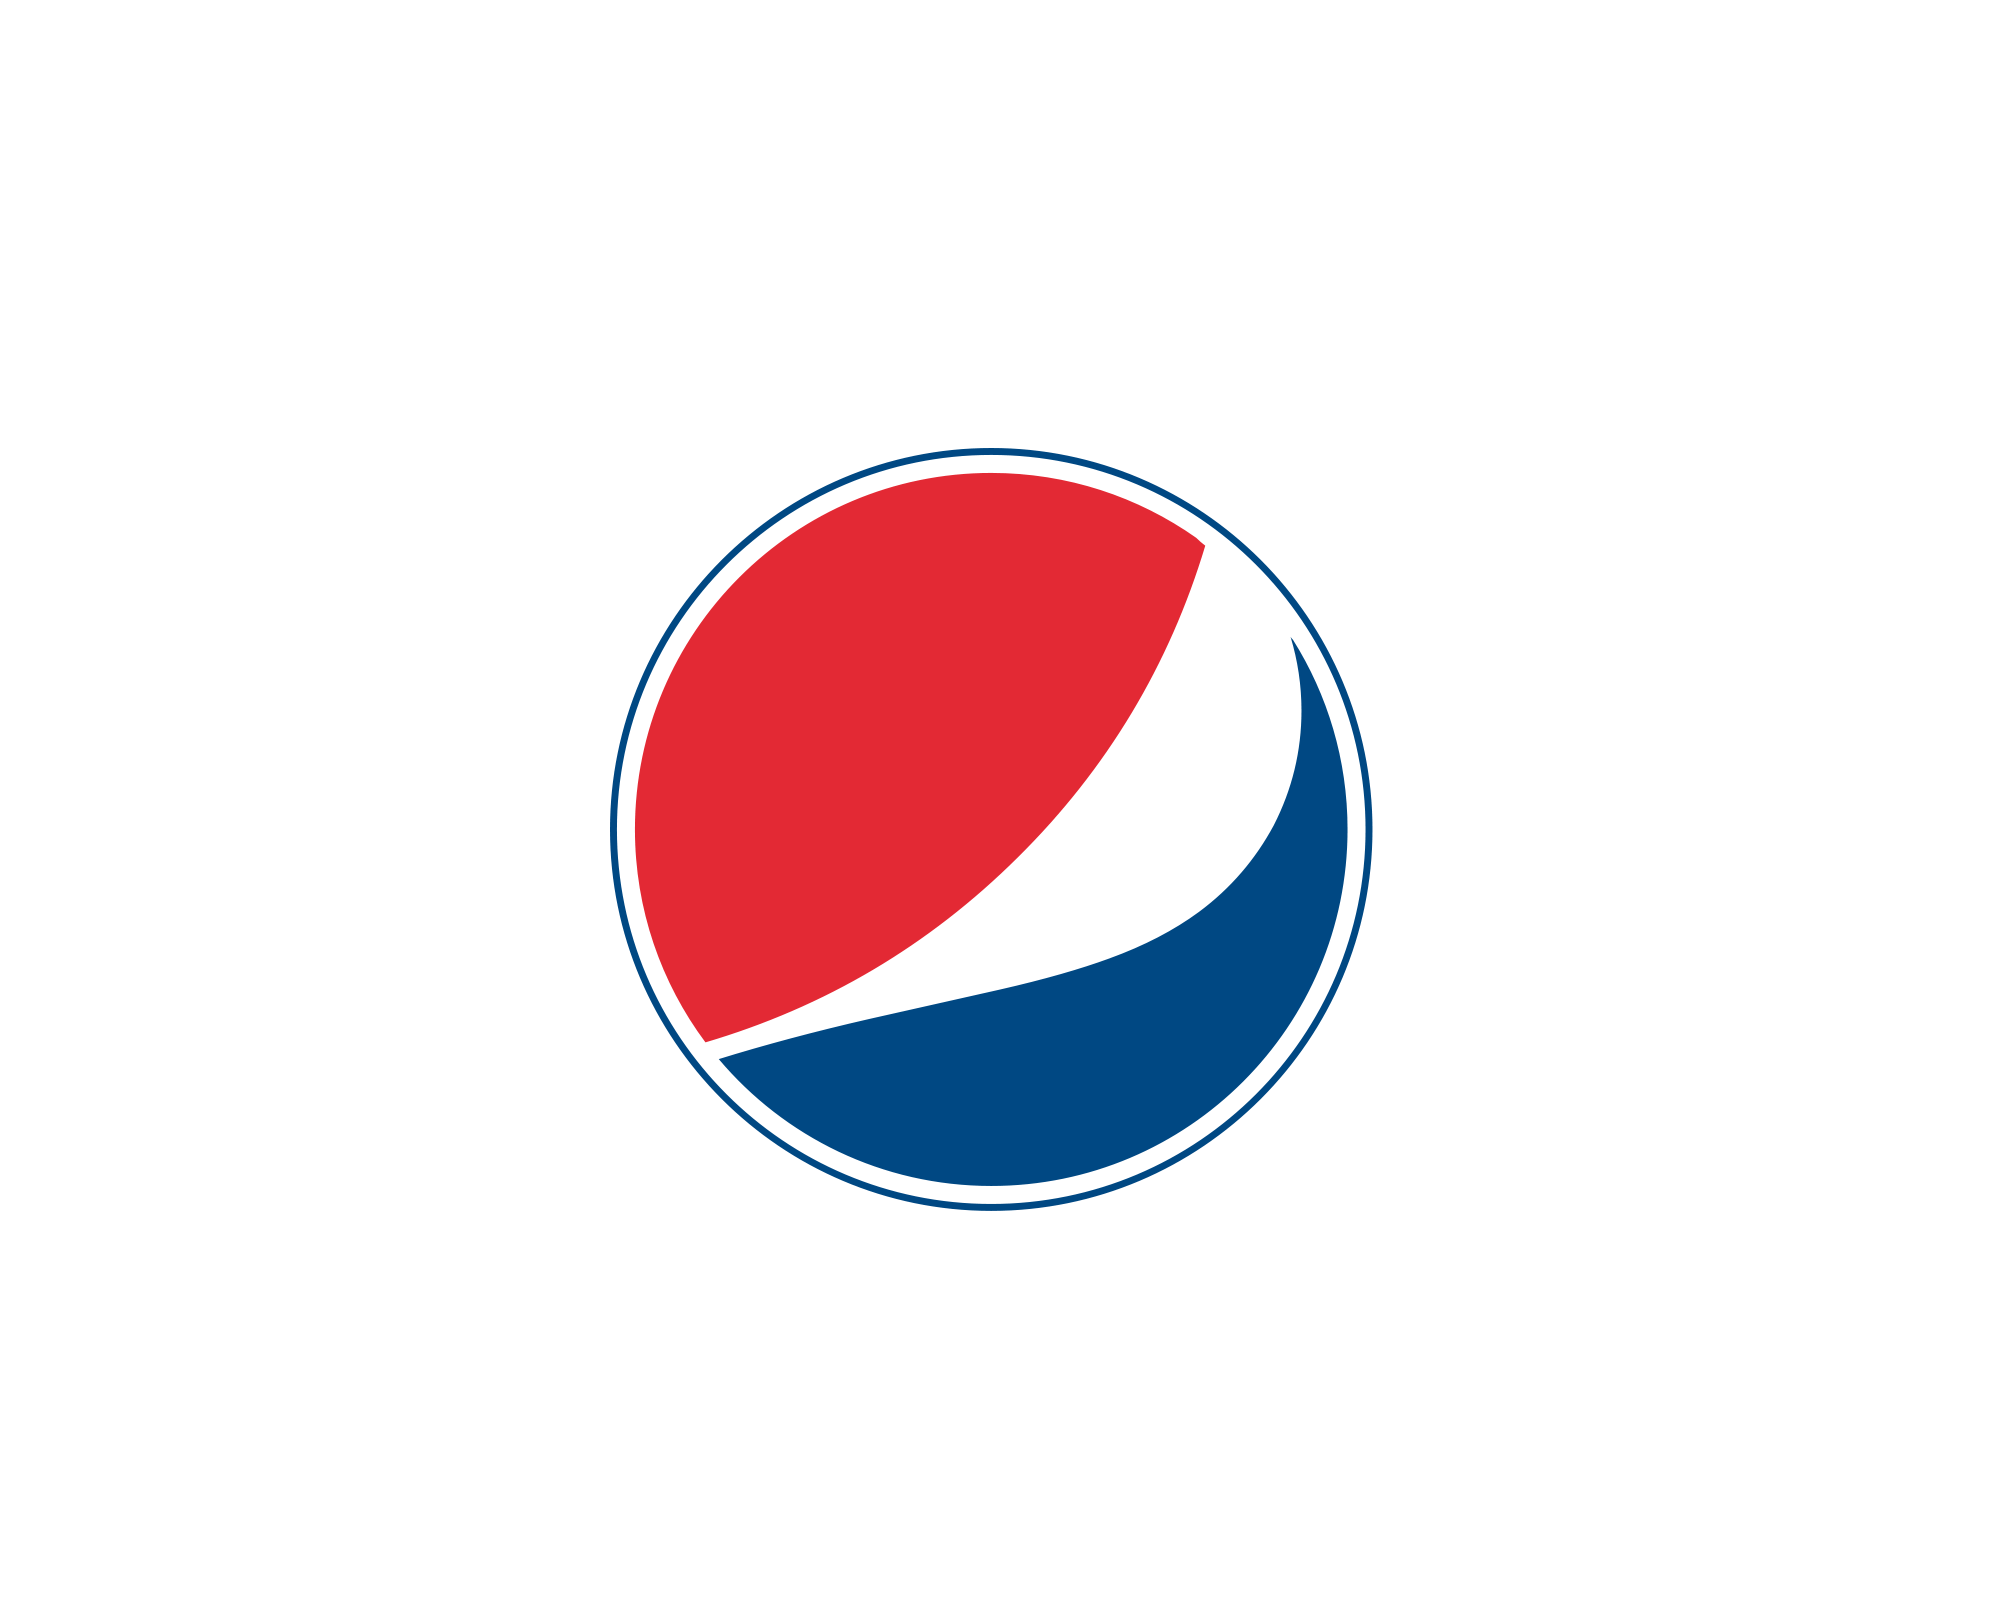 Pepsi 2017 Logo - Pepsi Logo PNG Image Transparent Free Download